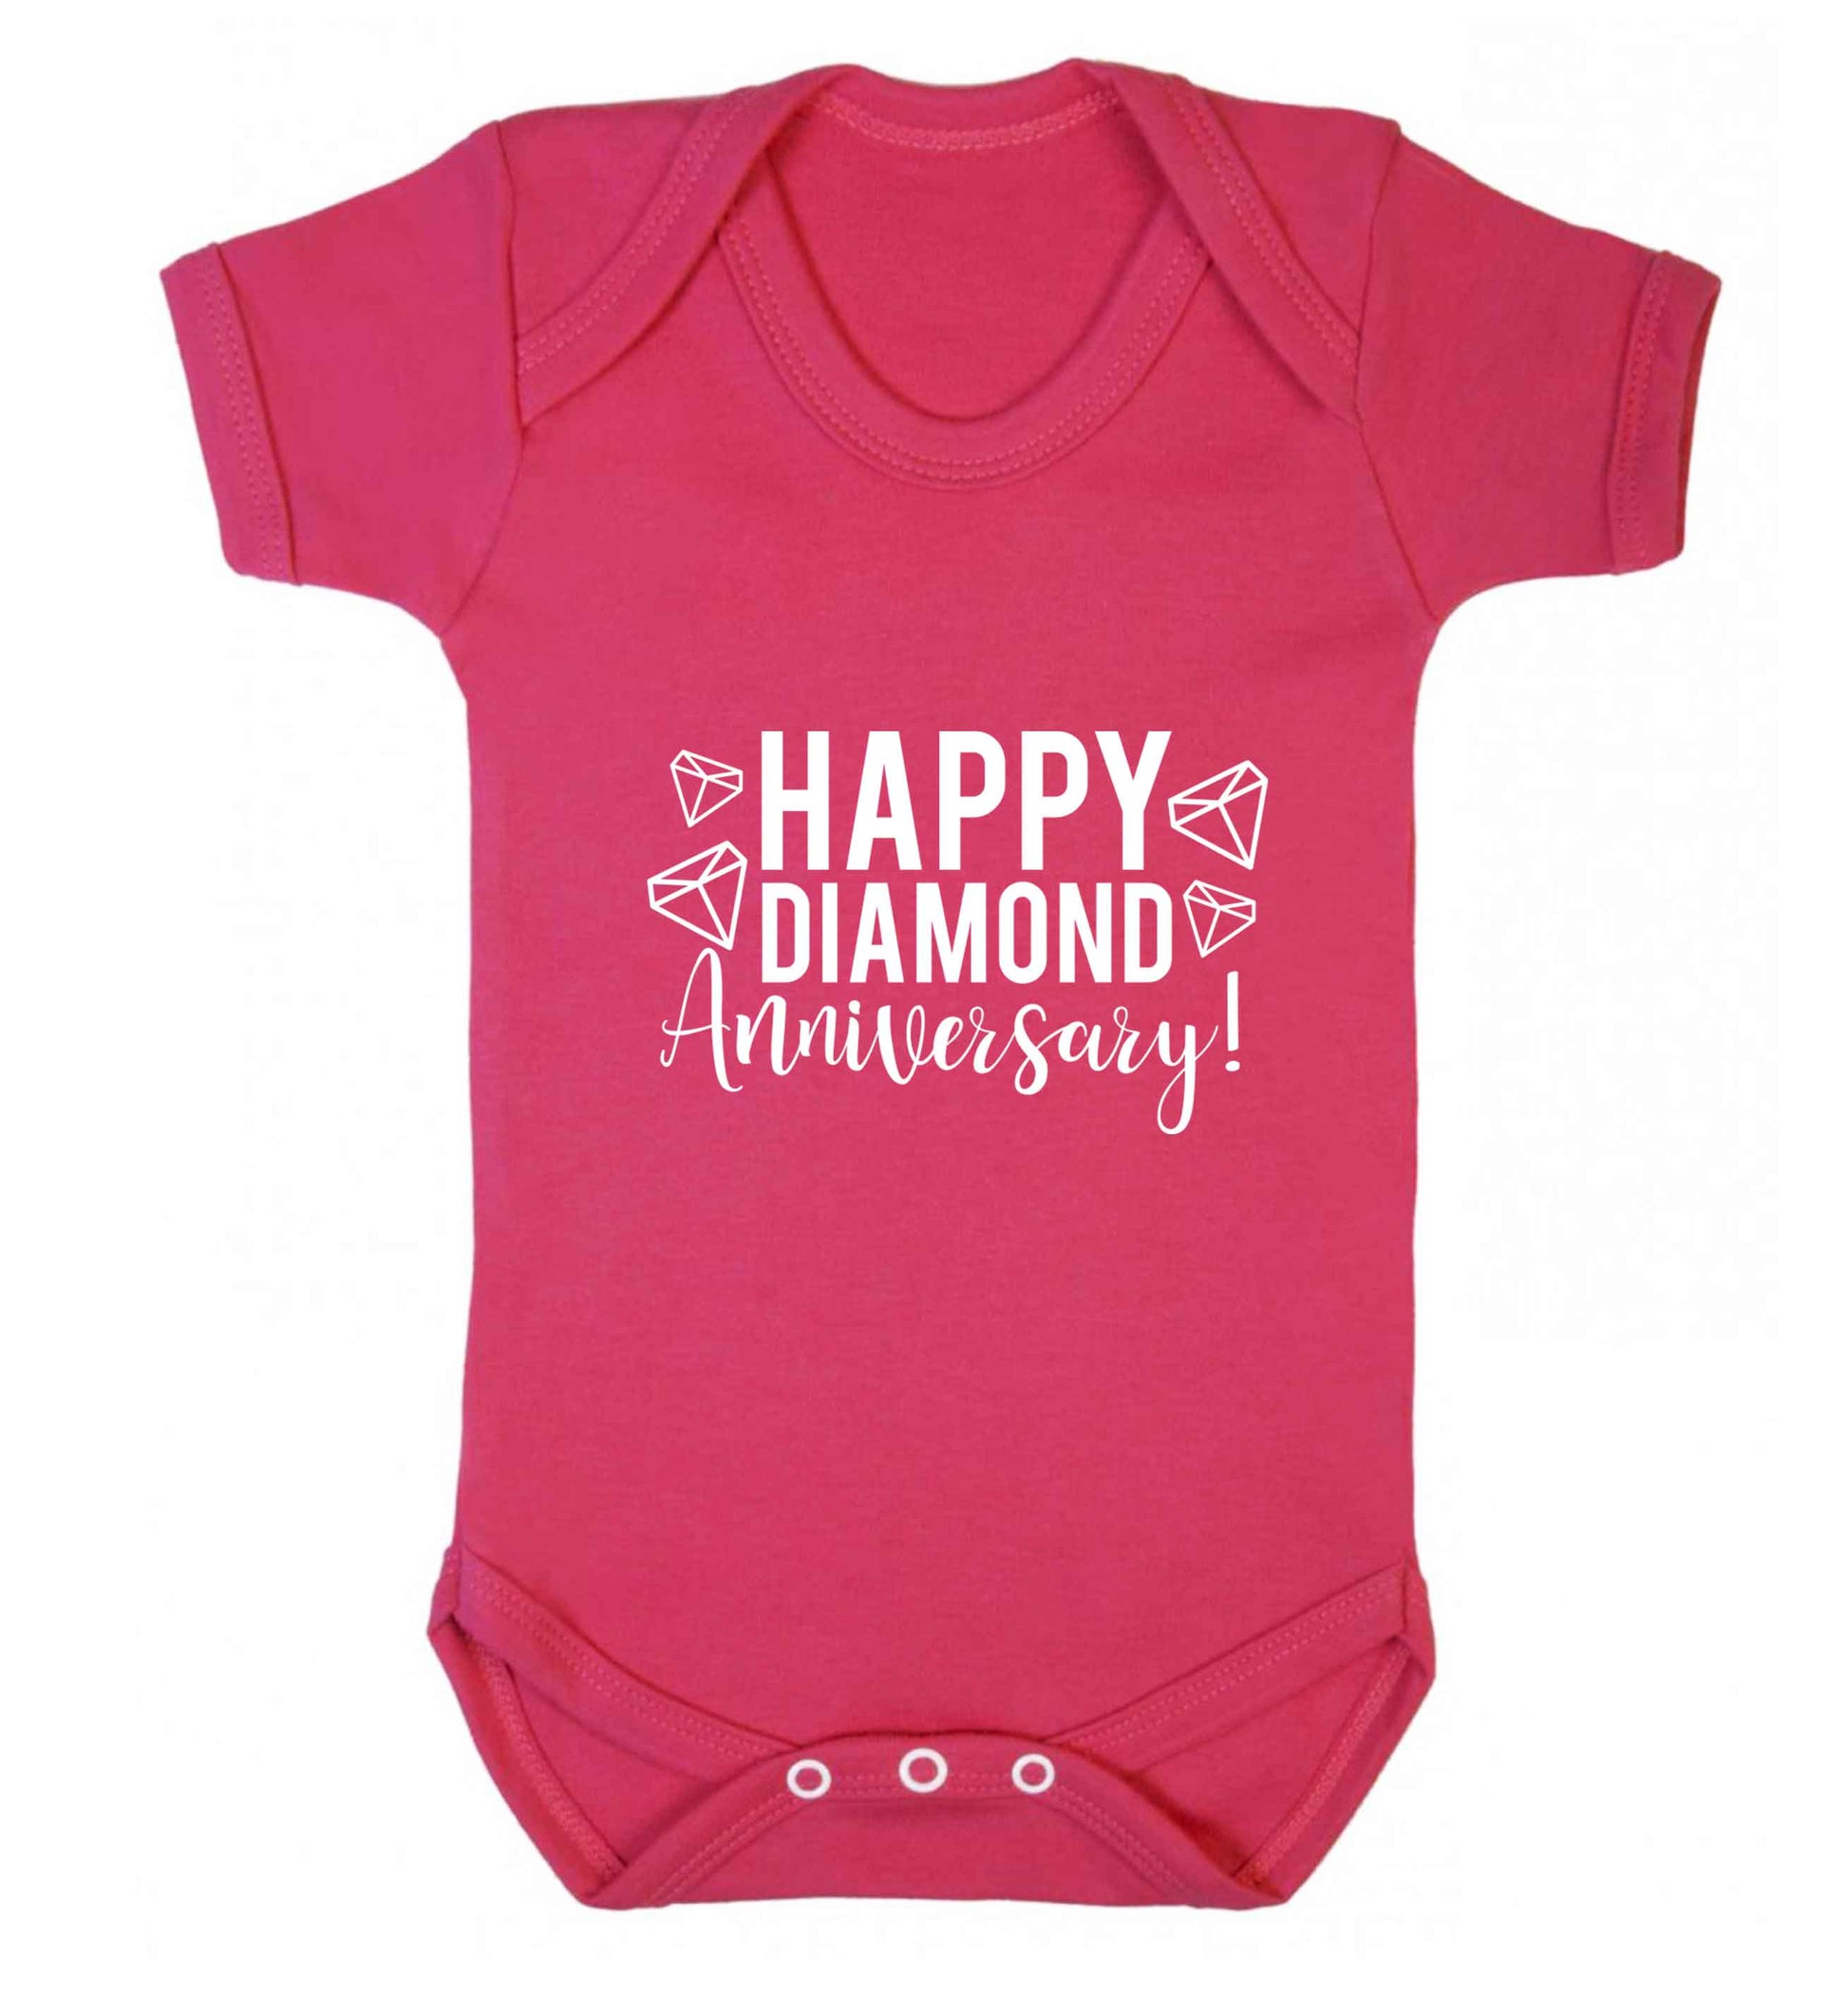 Happy diamond anniversary! baby vest dark pink 18-24 months